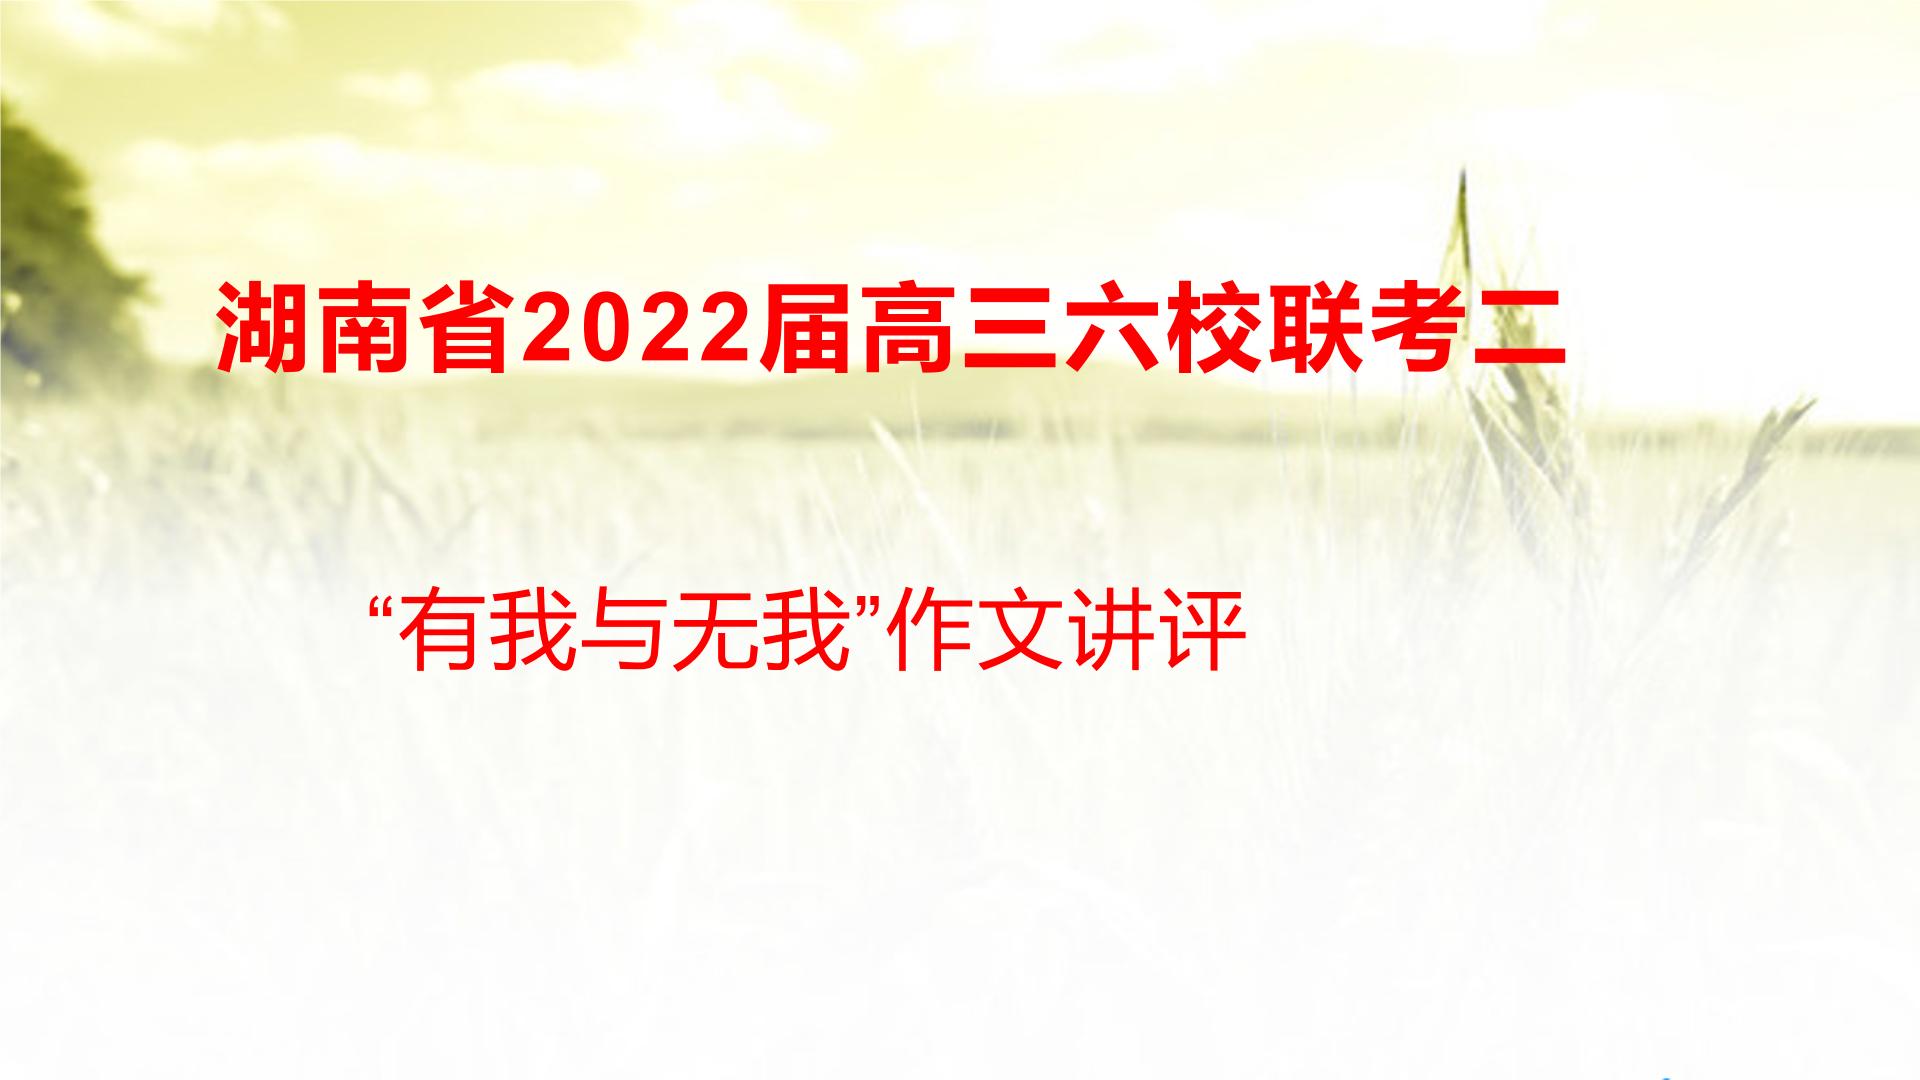 42 湖南省2022届高三六校联考二“有我与无我”作文讲评-2022年高考作文热点新闻素材积累与运用